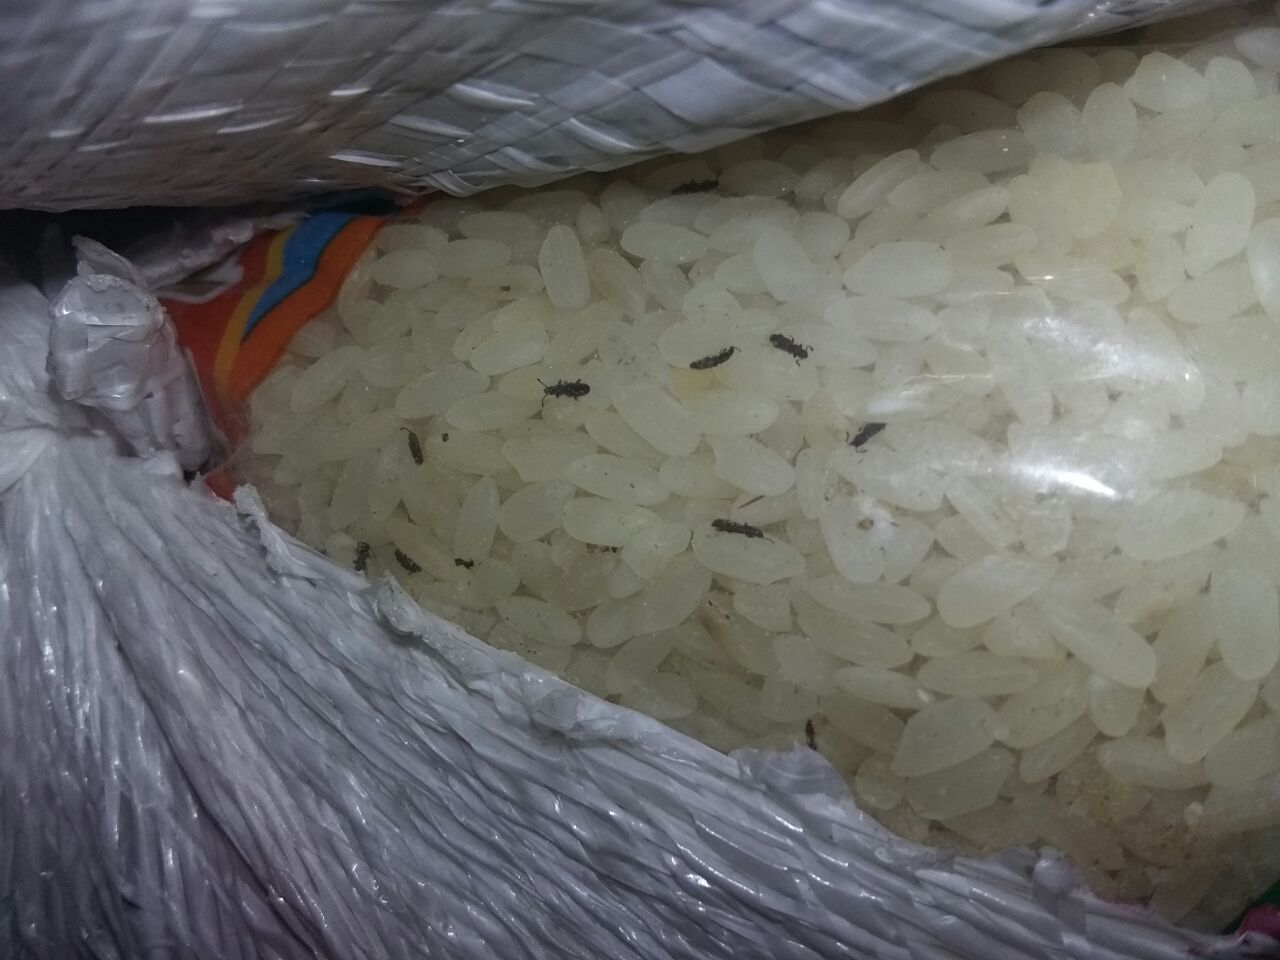   «كارثة».. الهجان: مخازن المجمعات الاستهلاكية بها 115 طنا أرز غير صالحة للاستهلاك الآدمي